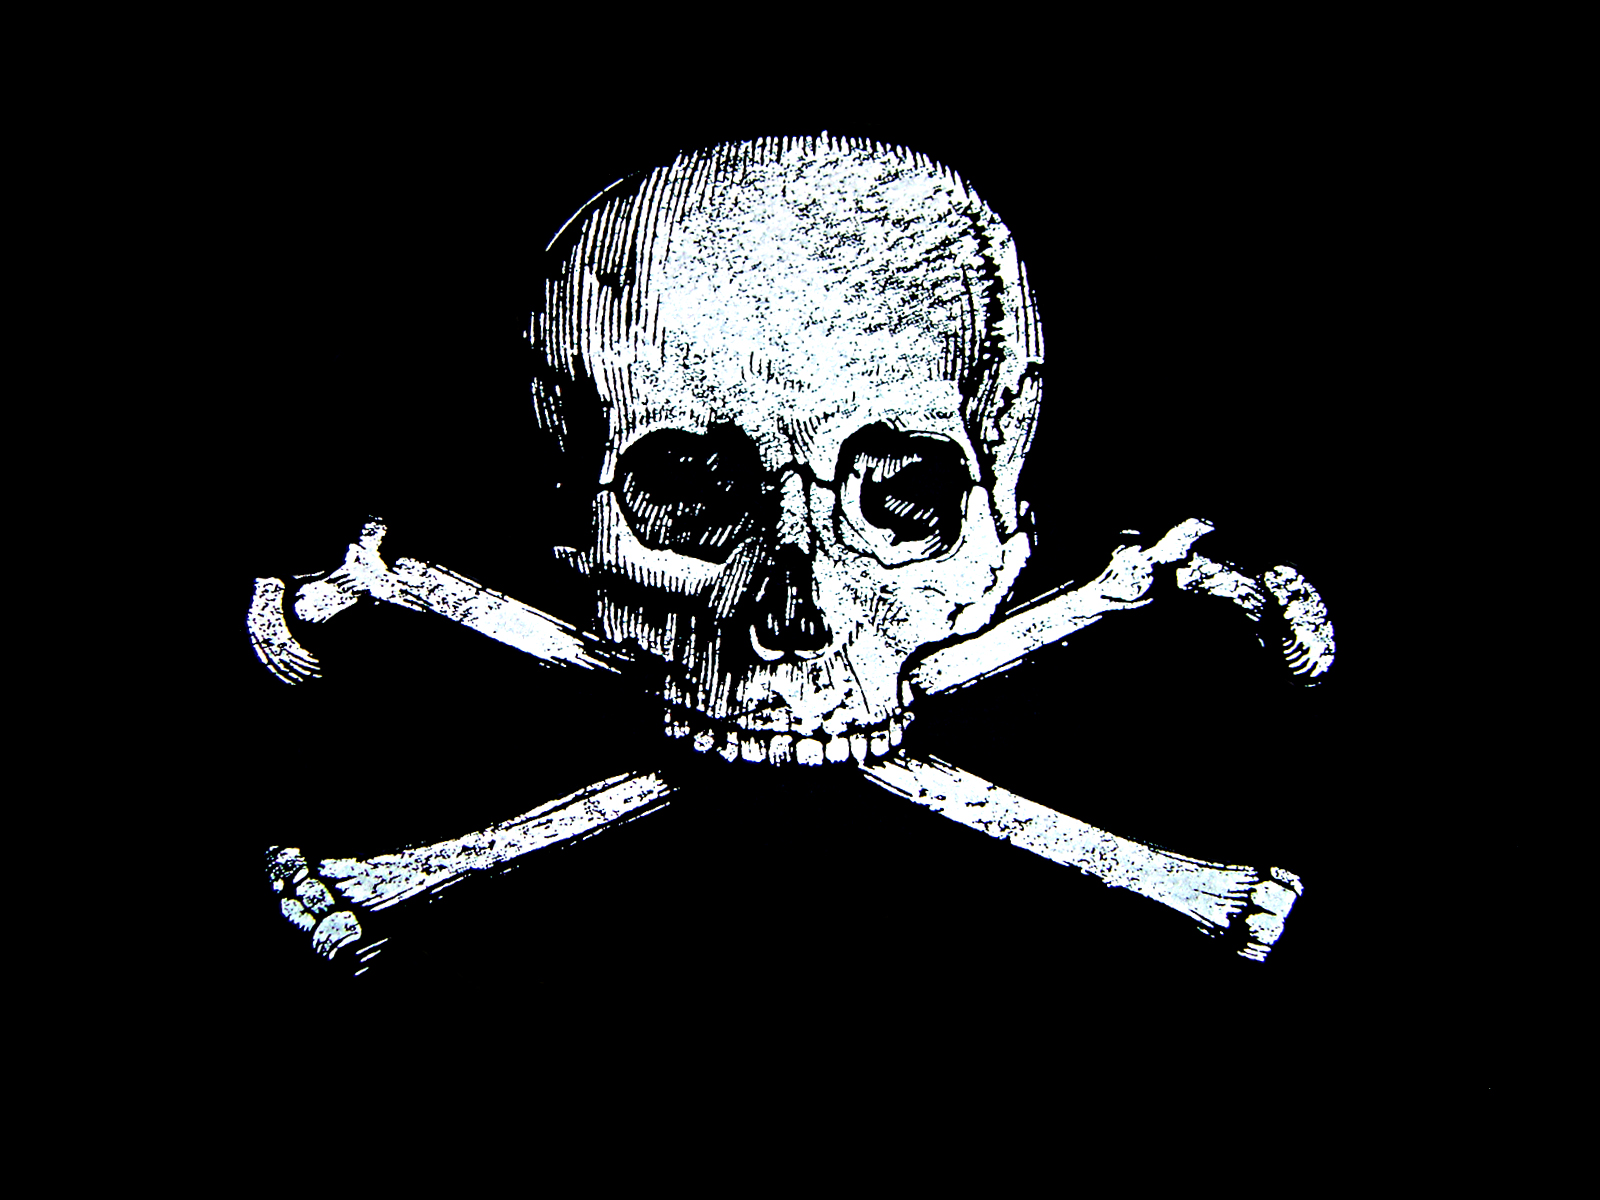 65+] Pirate Skull Wallpaper - WallpaperSafari